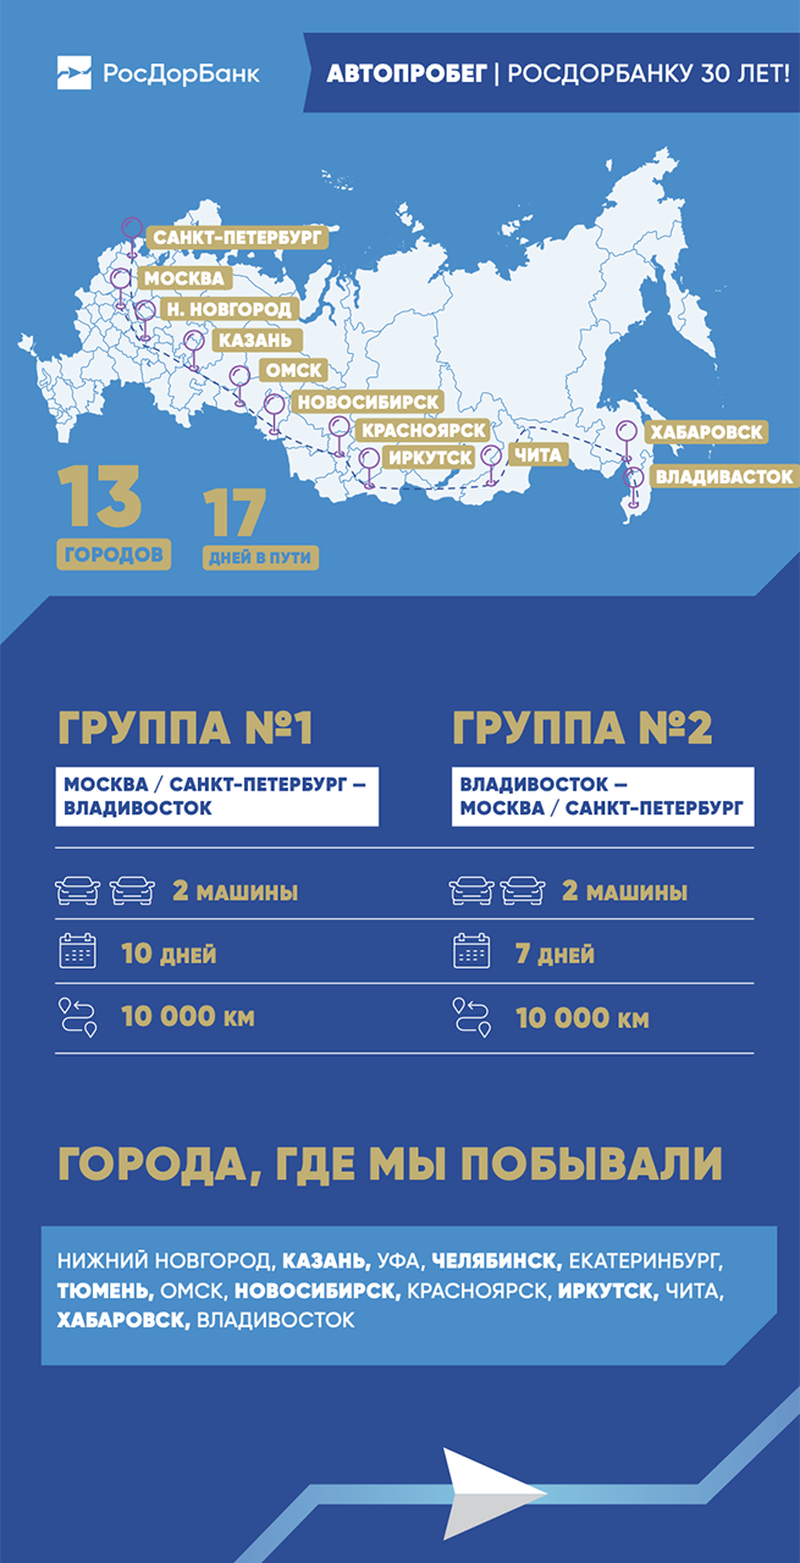 Автопробег Москва-Владивосток-Москва: 20 000 км пути за 17 дней